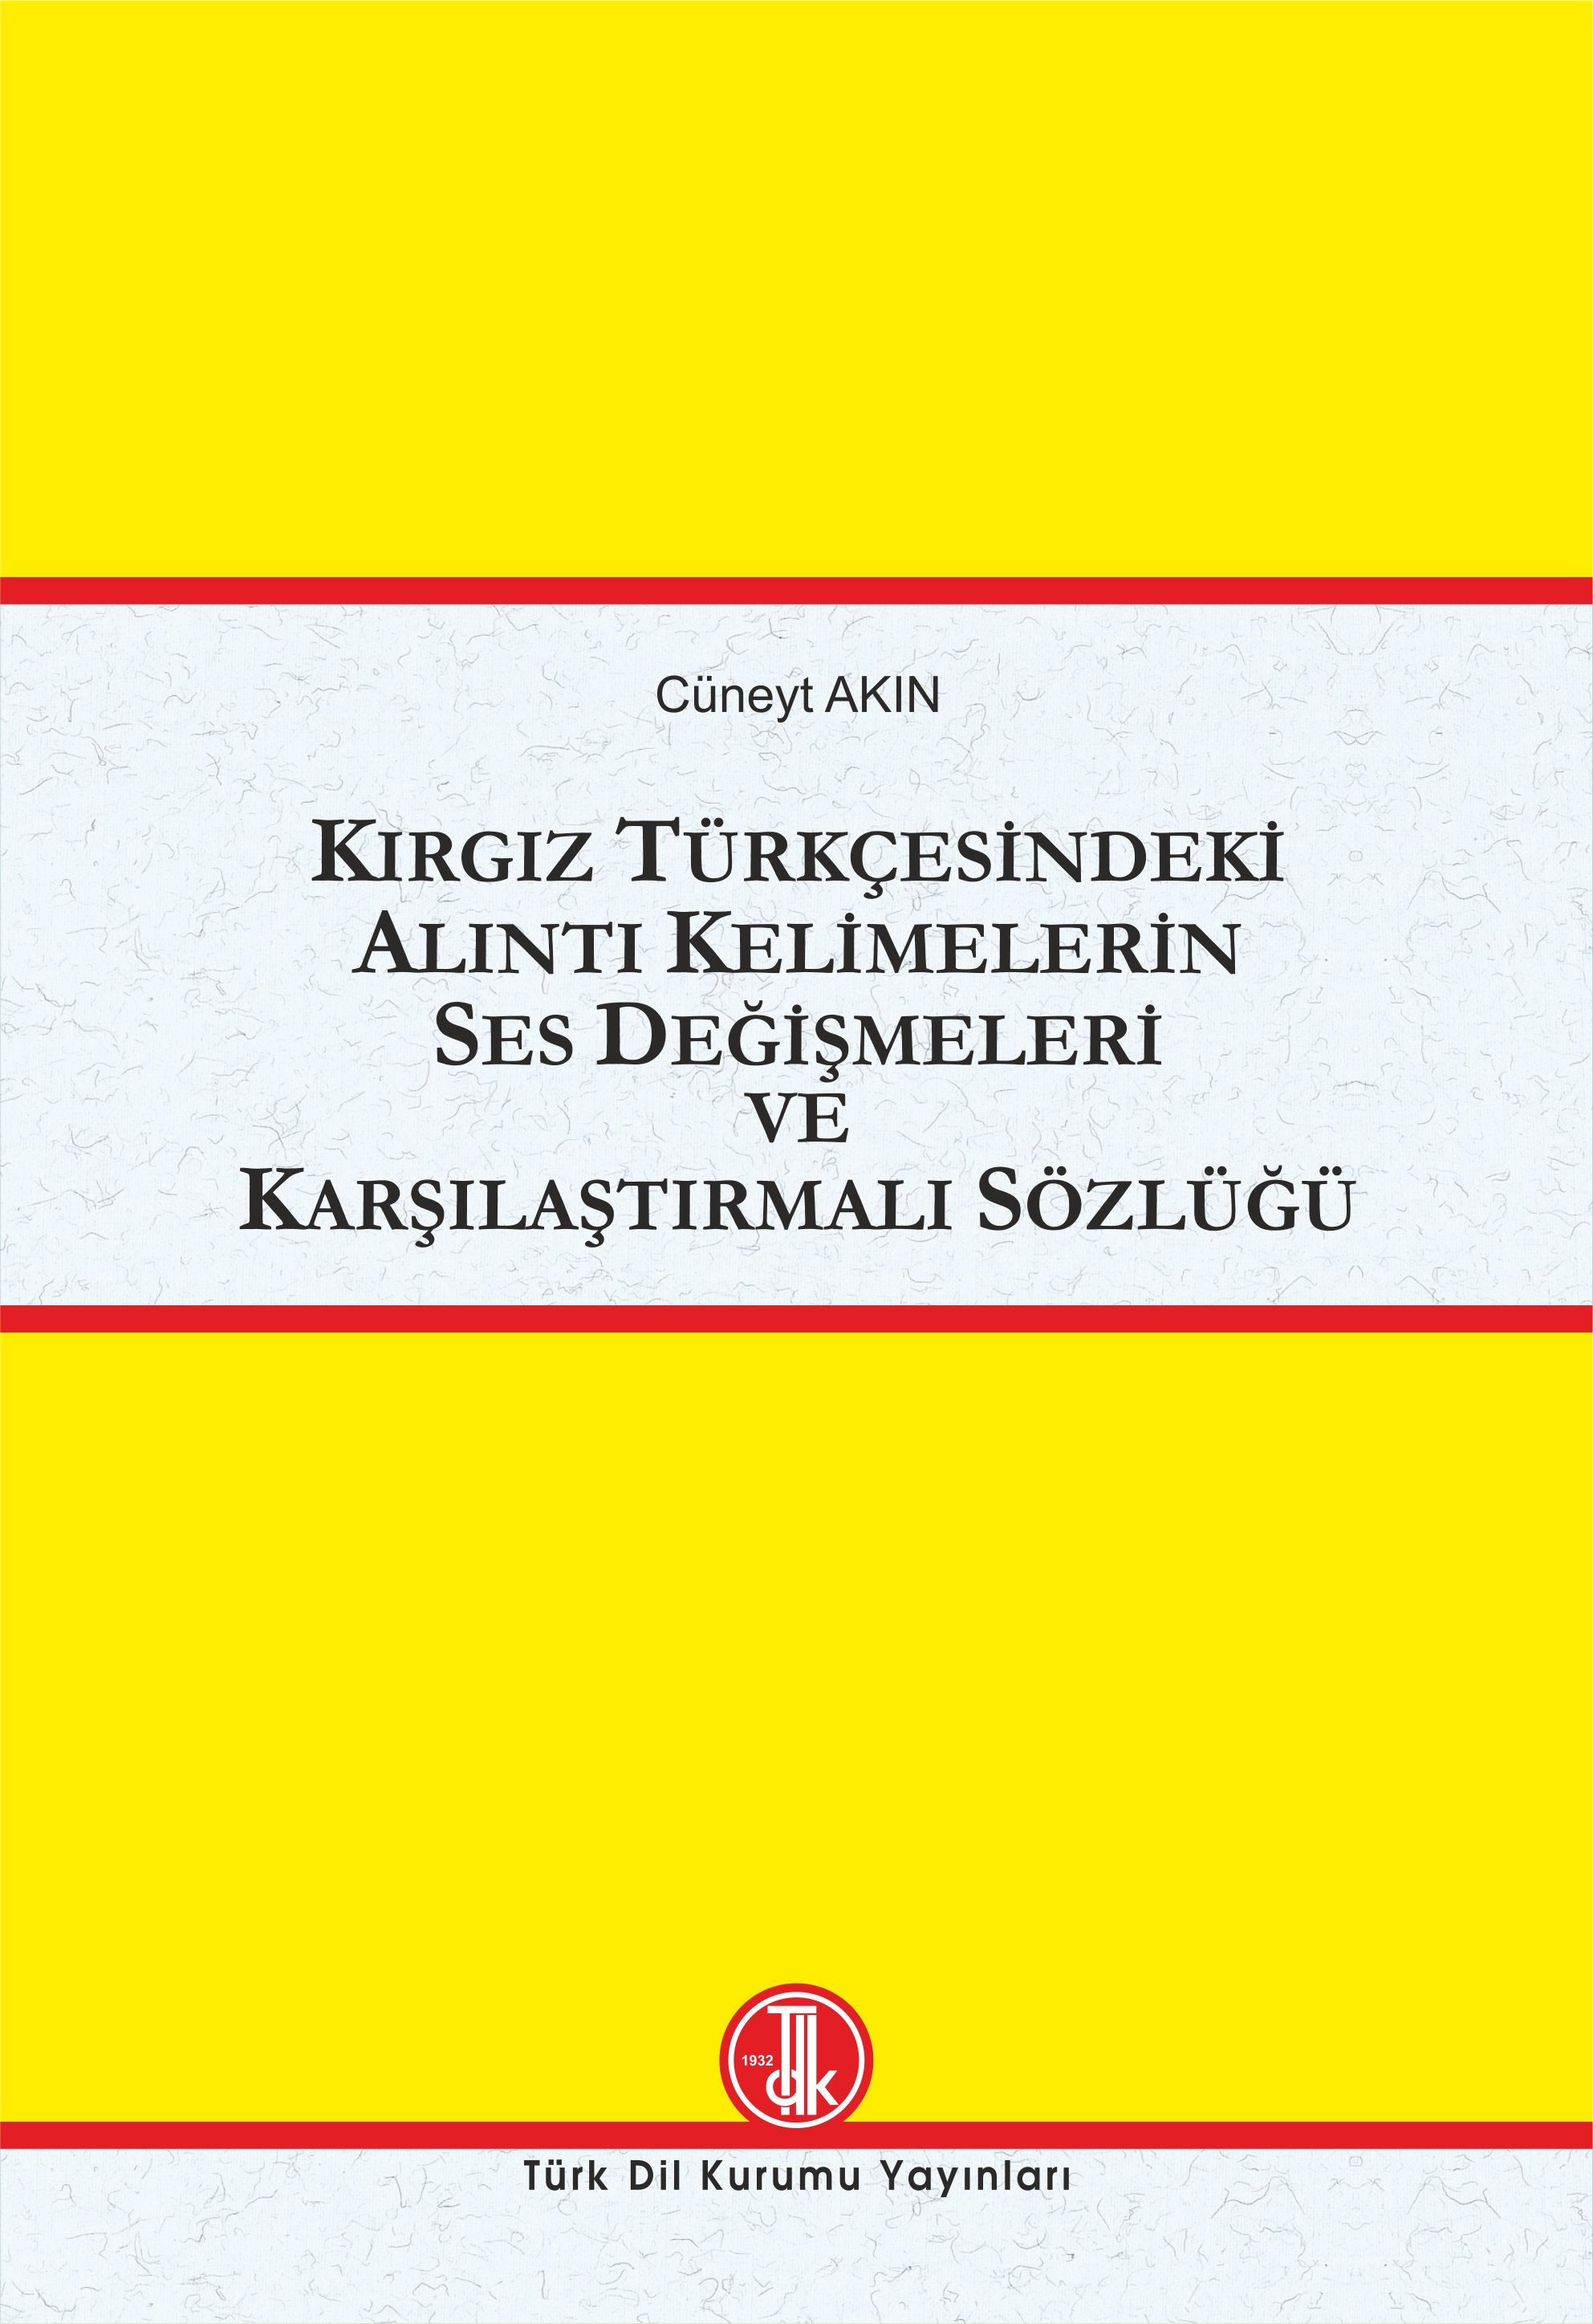 Kırgız Türkçesinde Alıntı Kelimelerin Ses Değişmeleri ve Karşılaştırmalı Sözlüğü, 2022